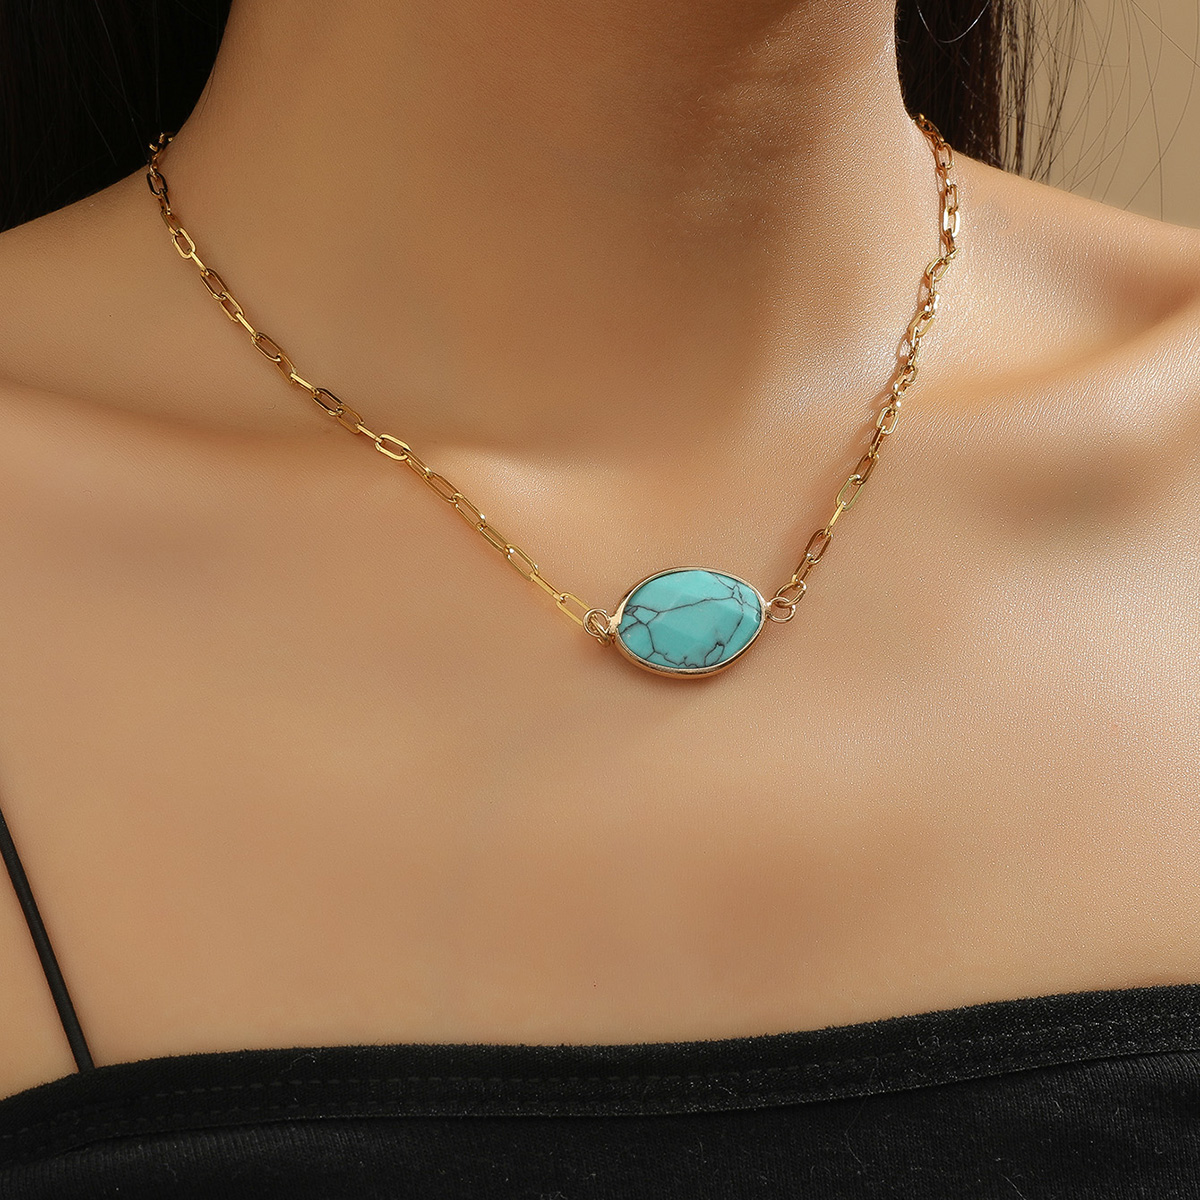 10pcs Gold Tone Oval Blue Turquoise Gemstone Pendant Necklace|GCJ290|UK SELLER